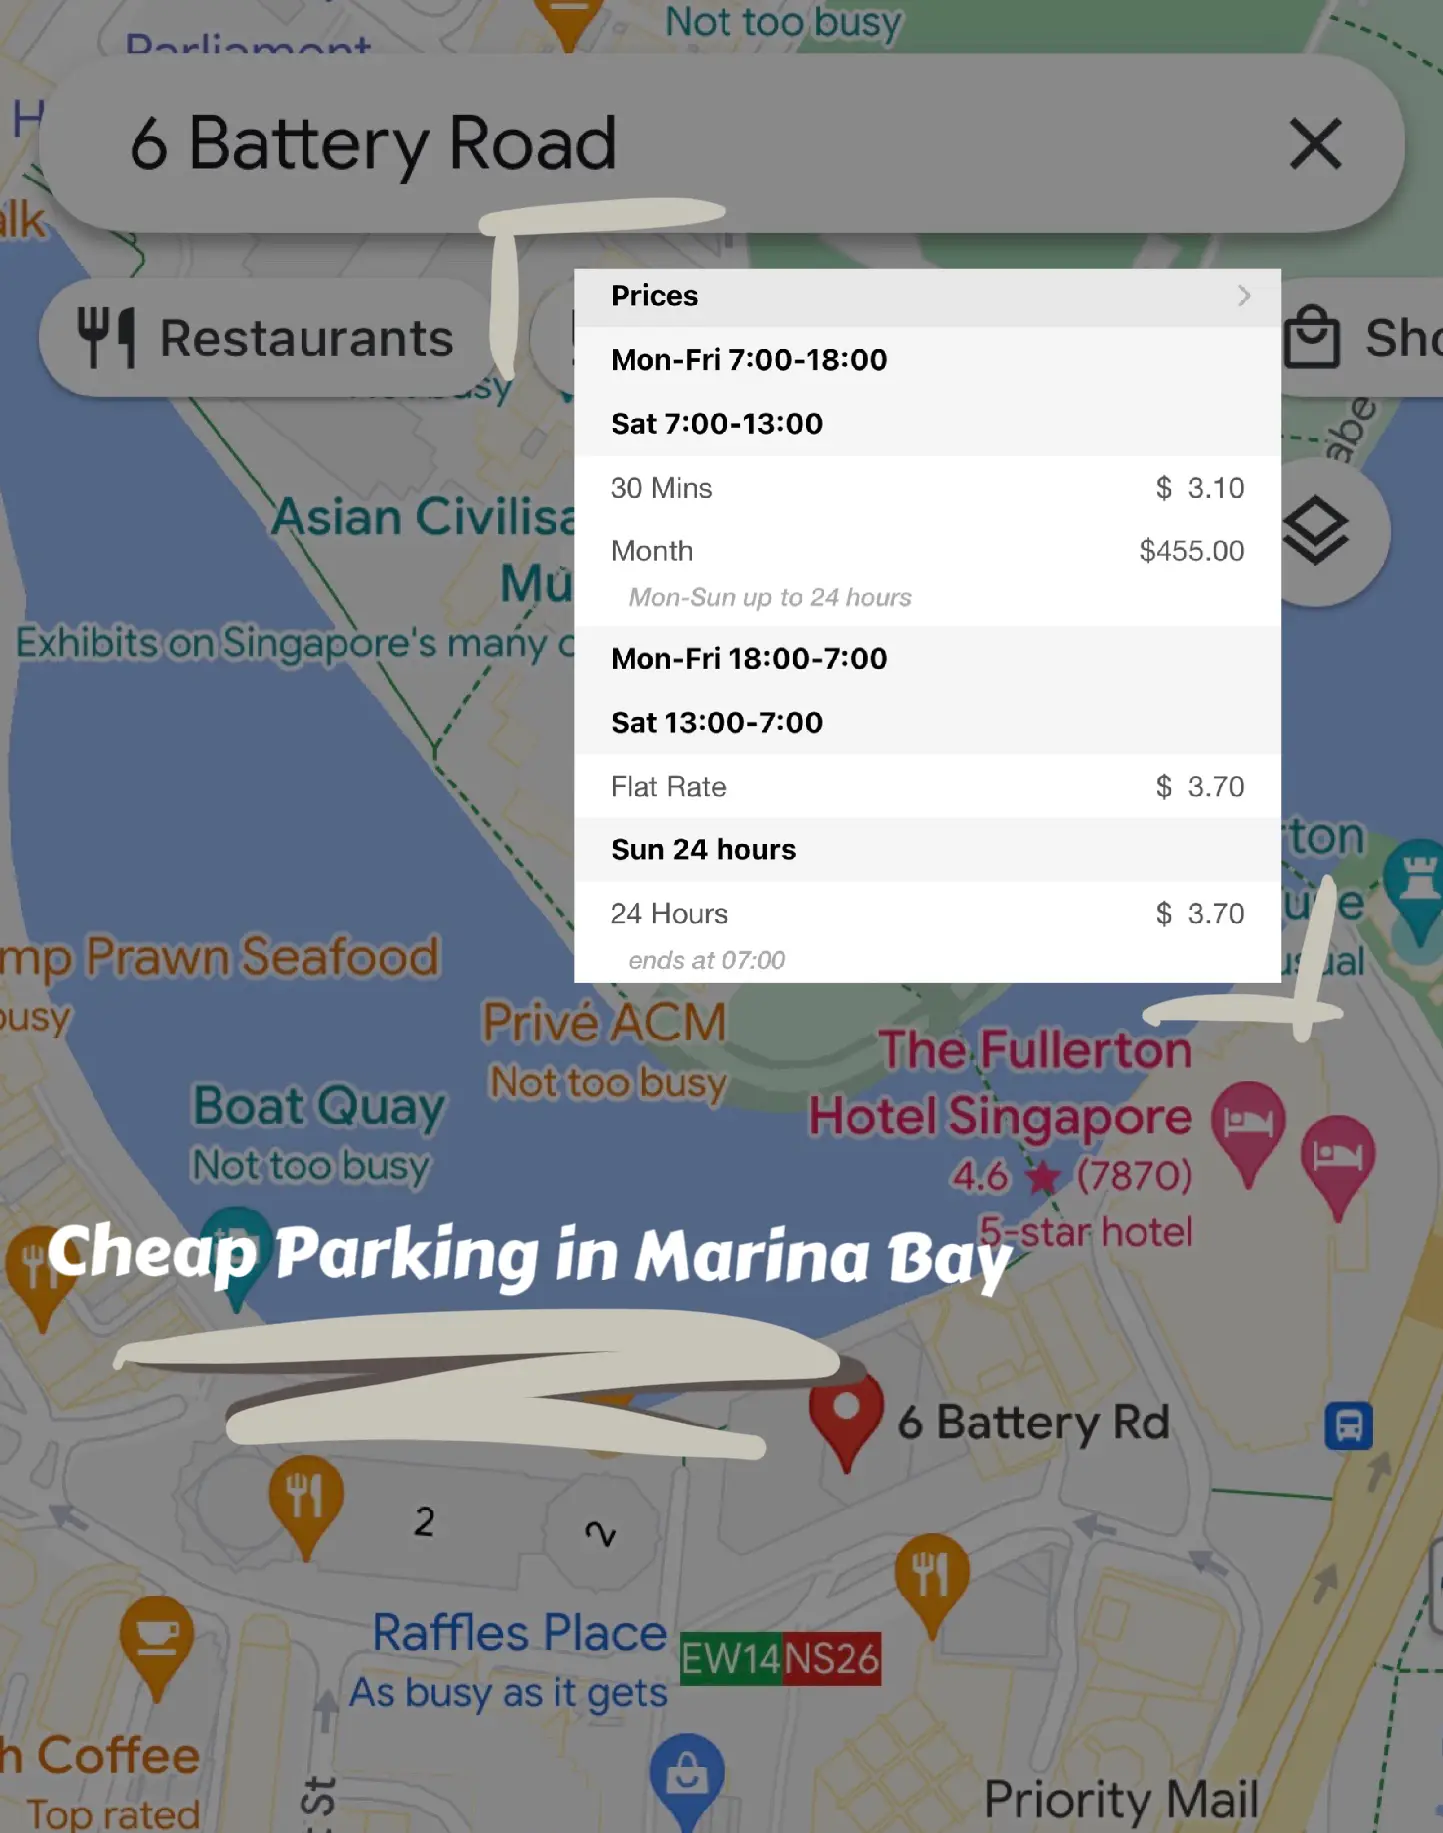 parking hacks at marina bay! 🅿️'s images(0)